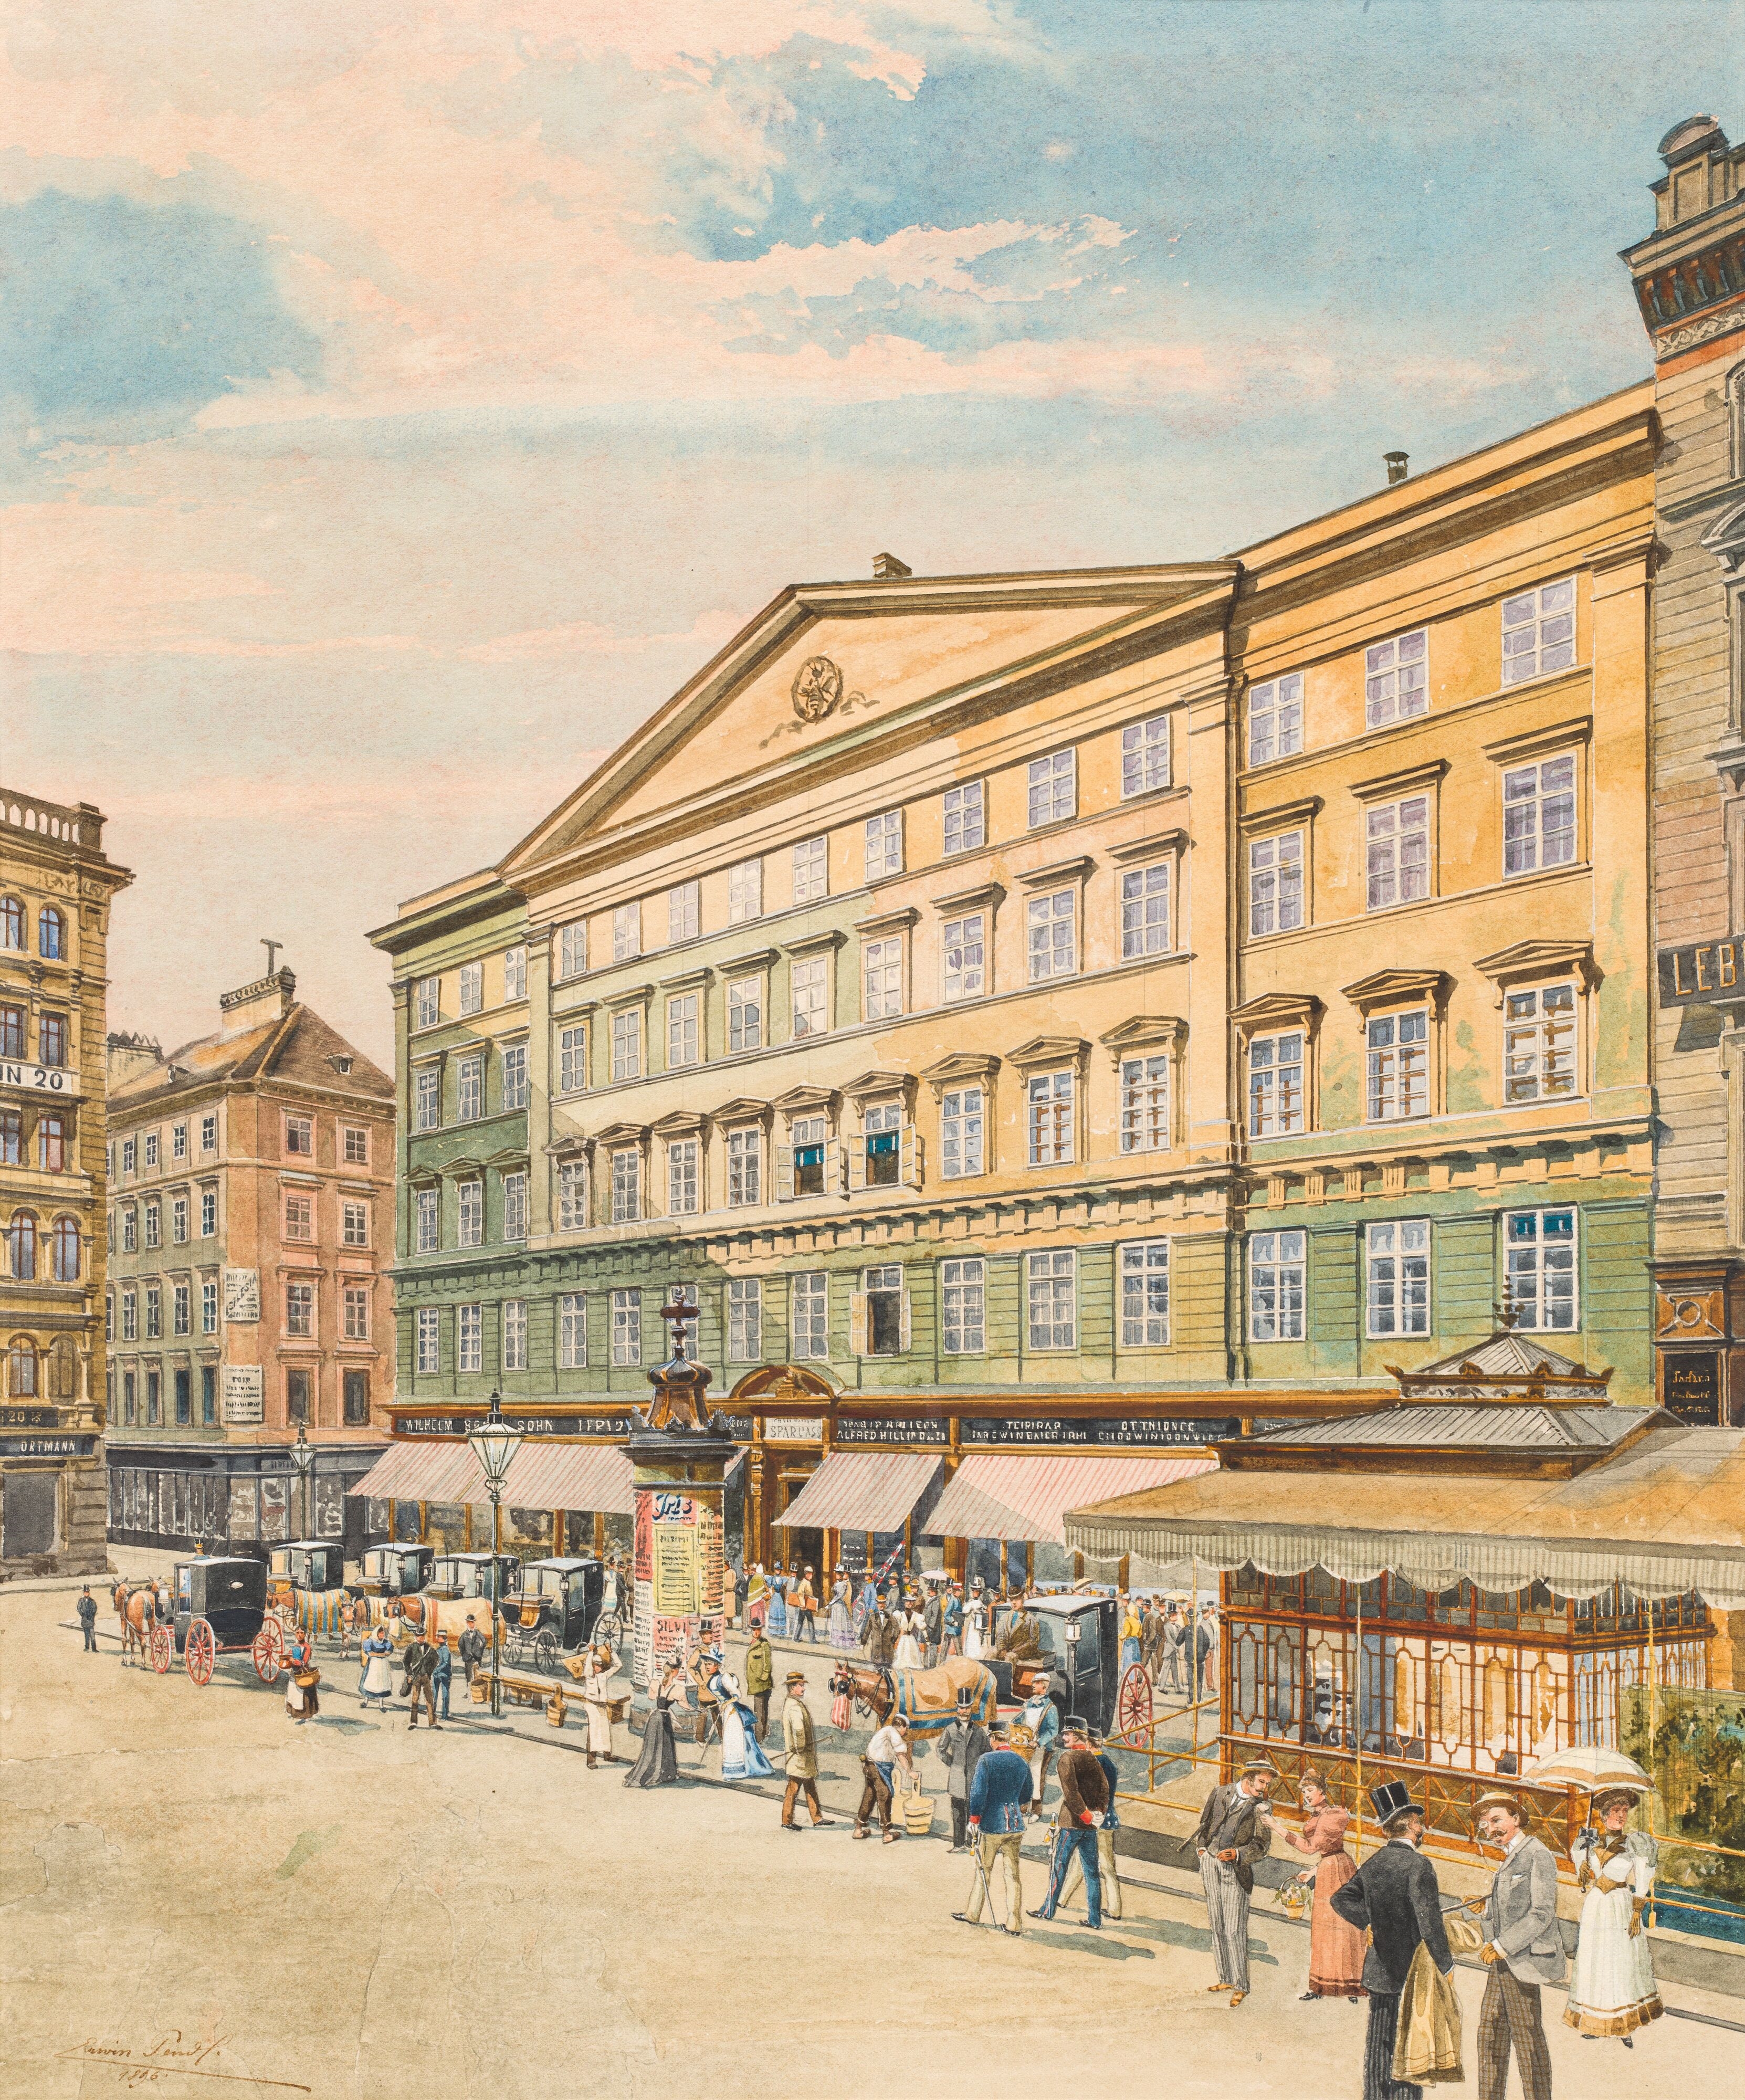 Am Graben in Vienna with the building of Erste Bank der österreichischen Sparkassen by Erwin Pendl, 1875 - 1945